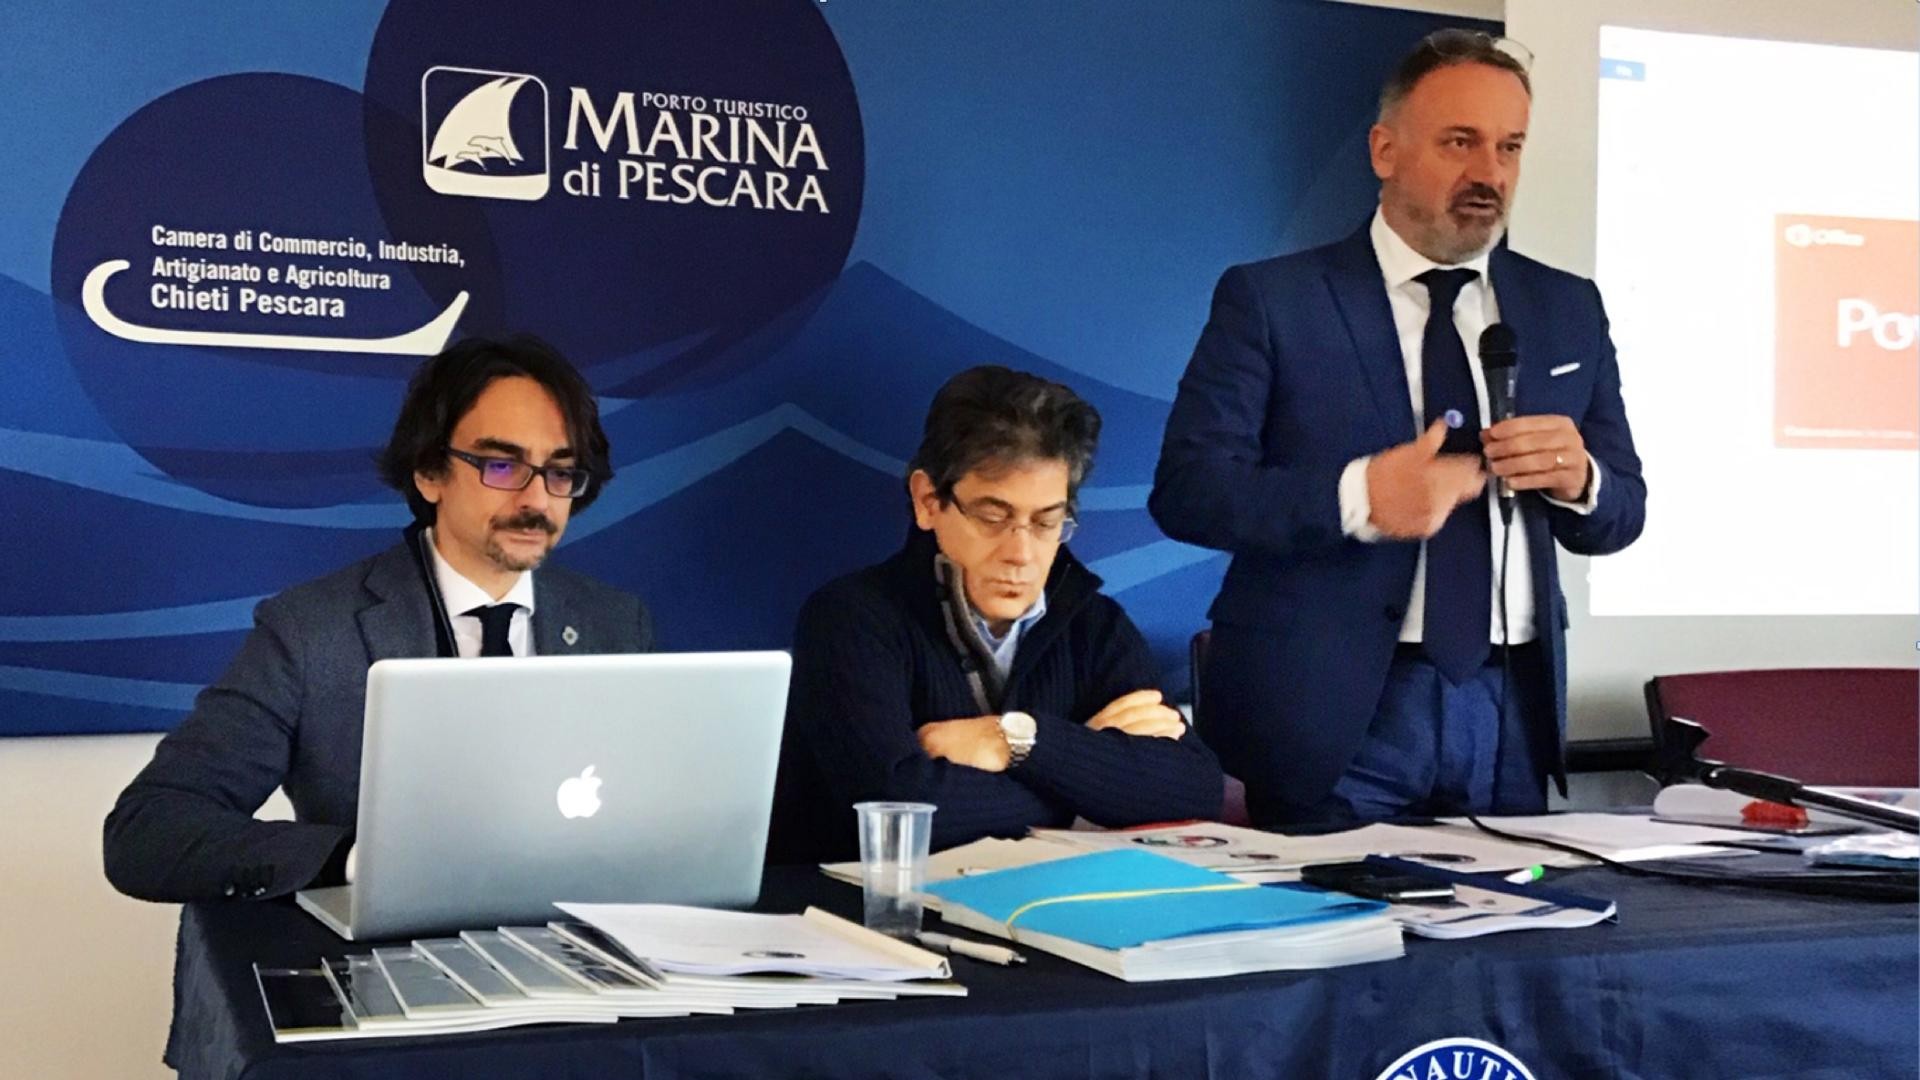 IV Conferenza di sistema Assonautica al Porto turistico di Pescara